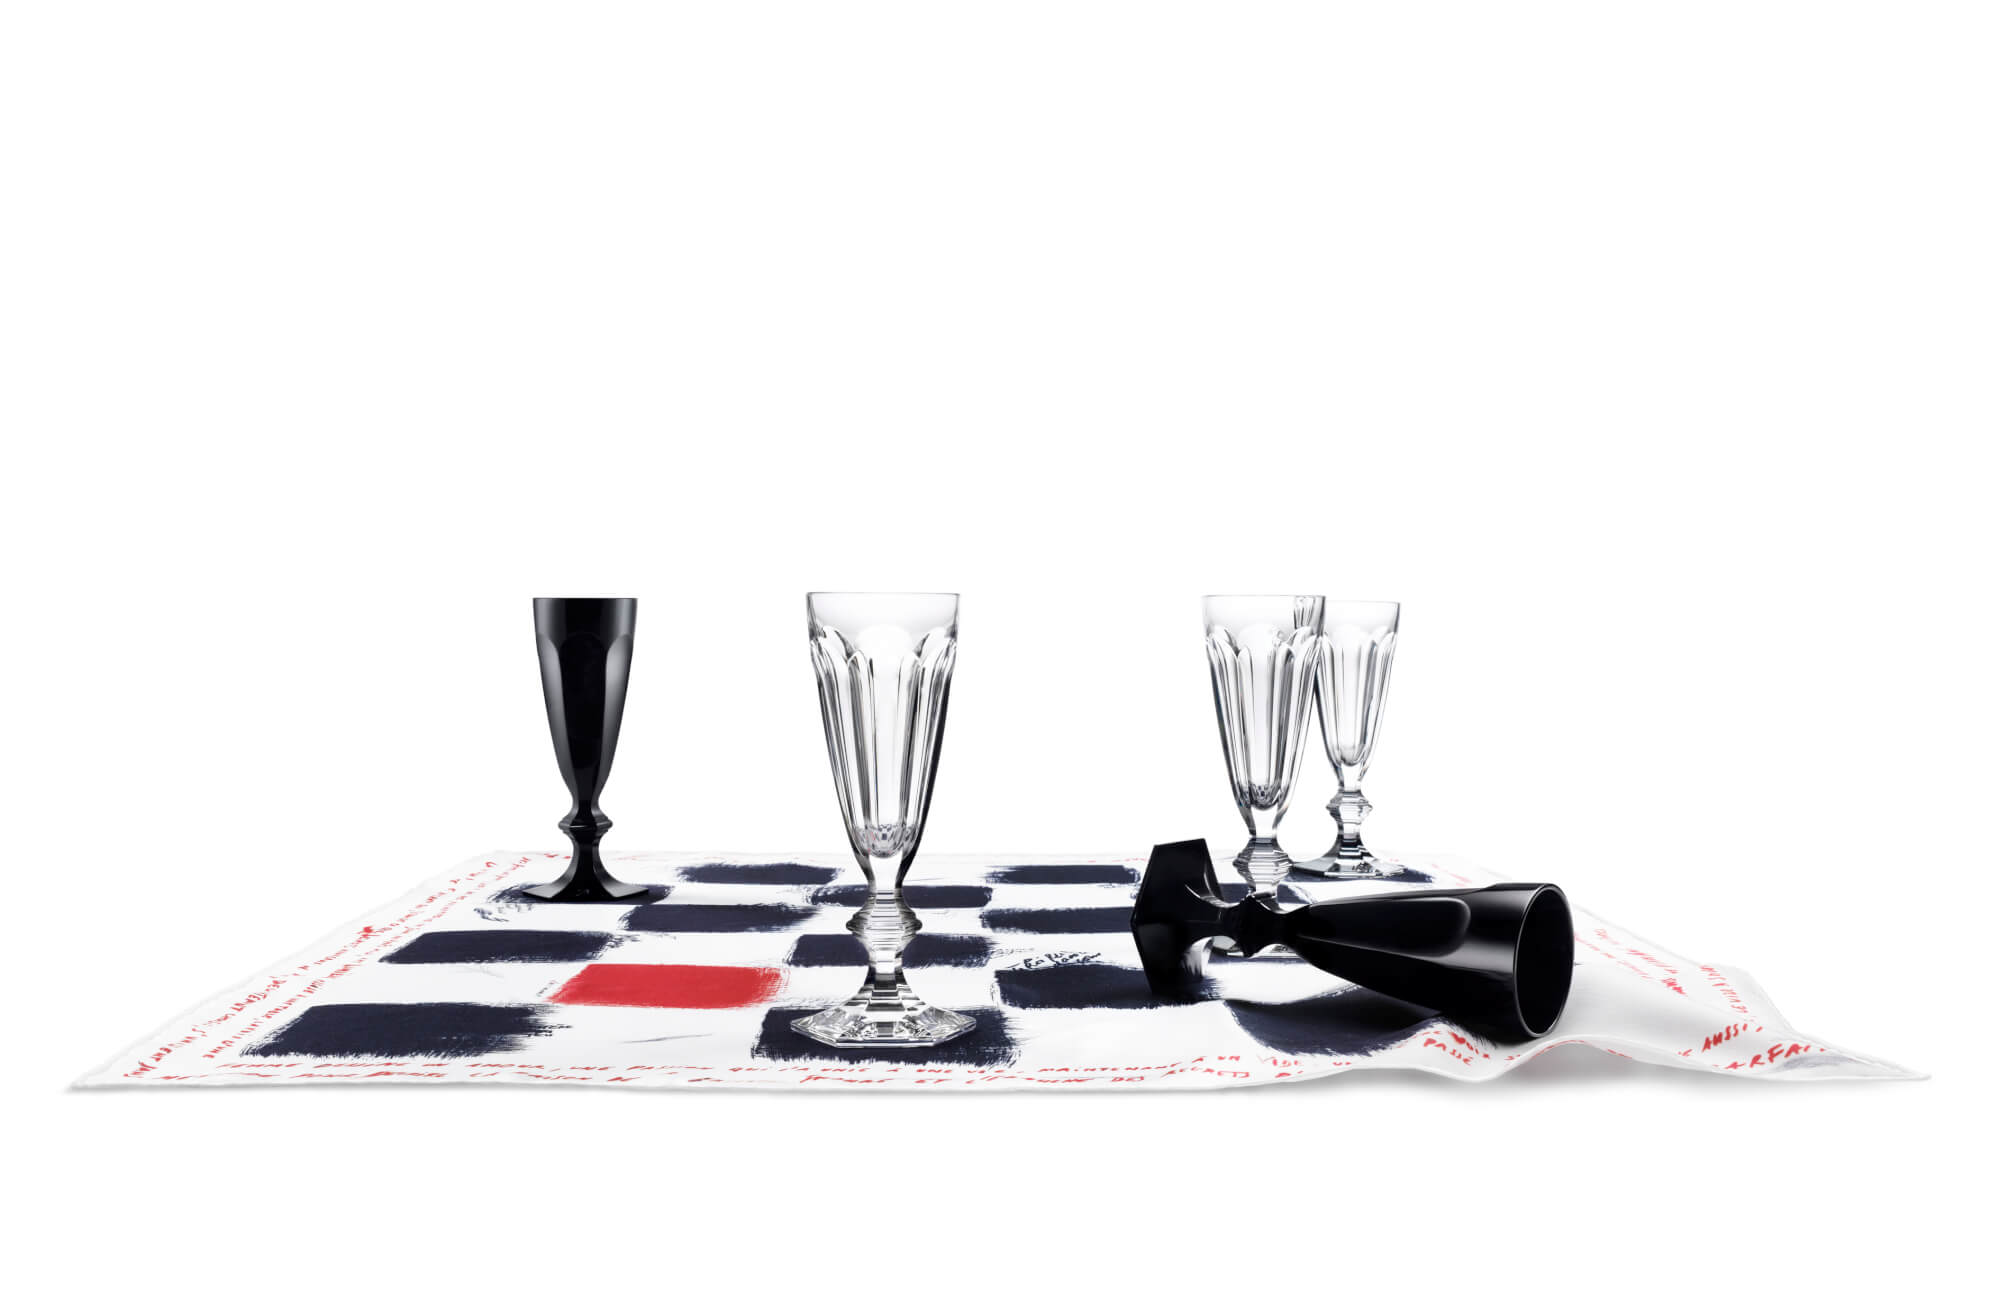 Jeu de Dames en Noir, flutes de champagne (Baccarat) - Cuisine Art de la table